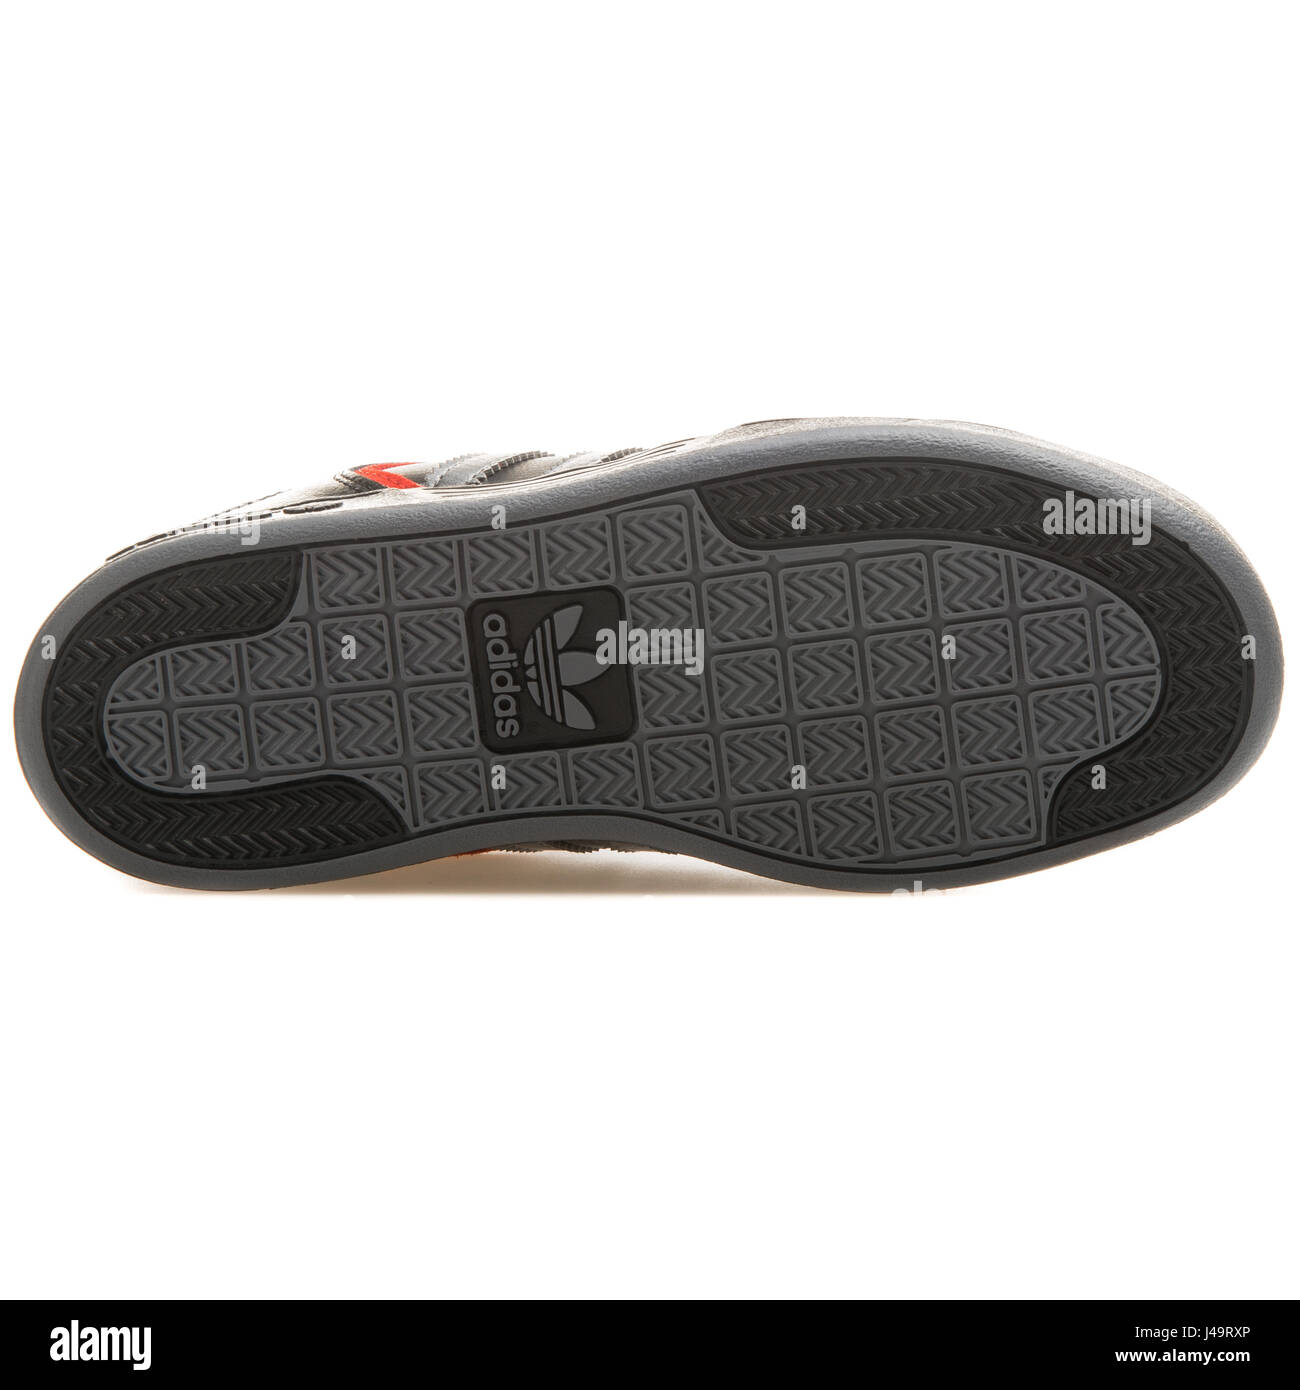 Adidas Varial J - D68711 Stock Photo - Alamy